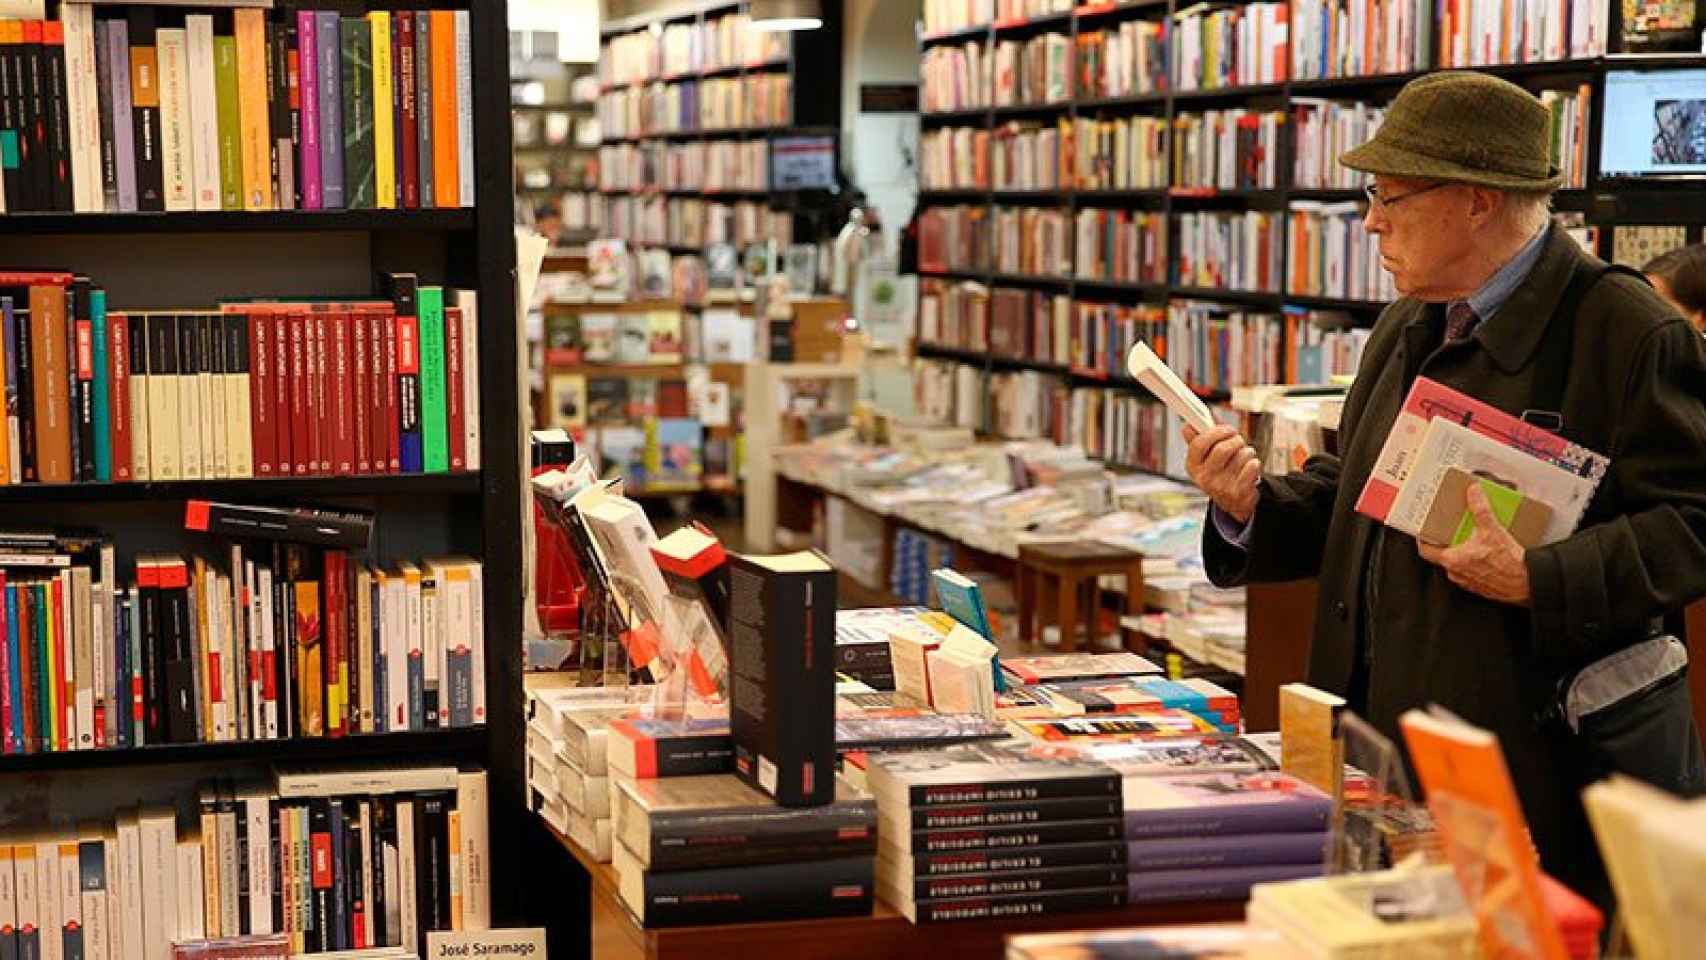 Un hombre consulta libros en una tienda, en una imagen de archivo / EFE